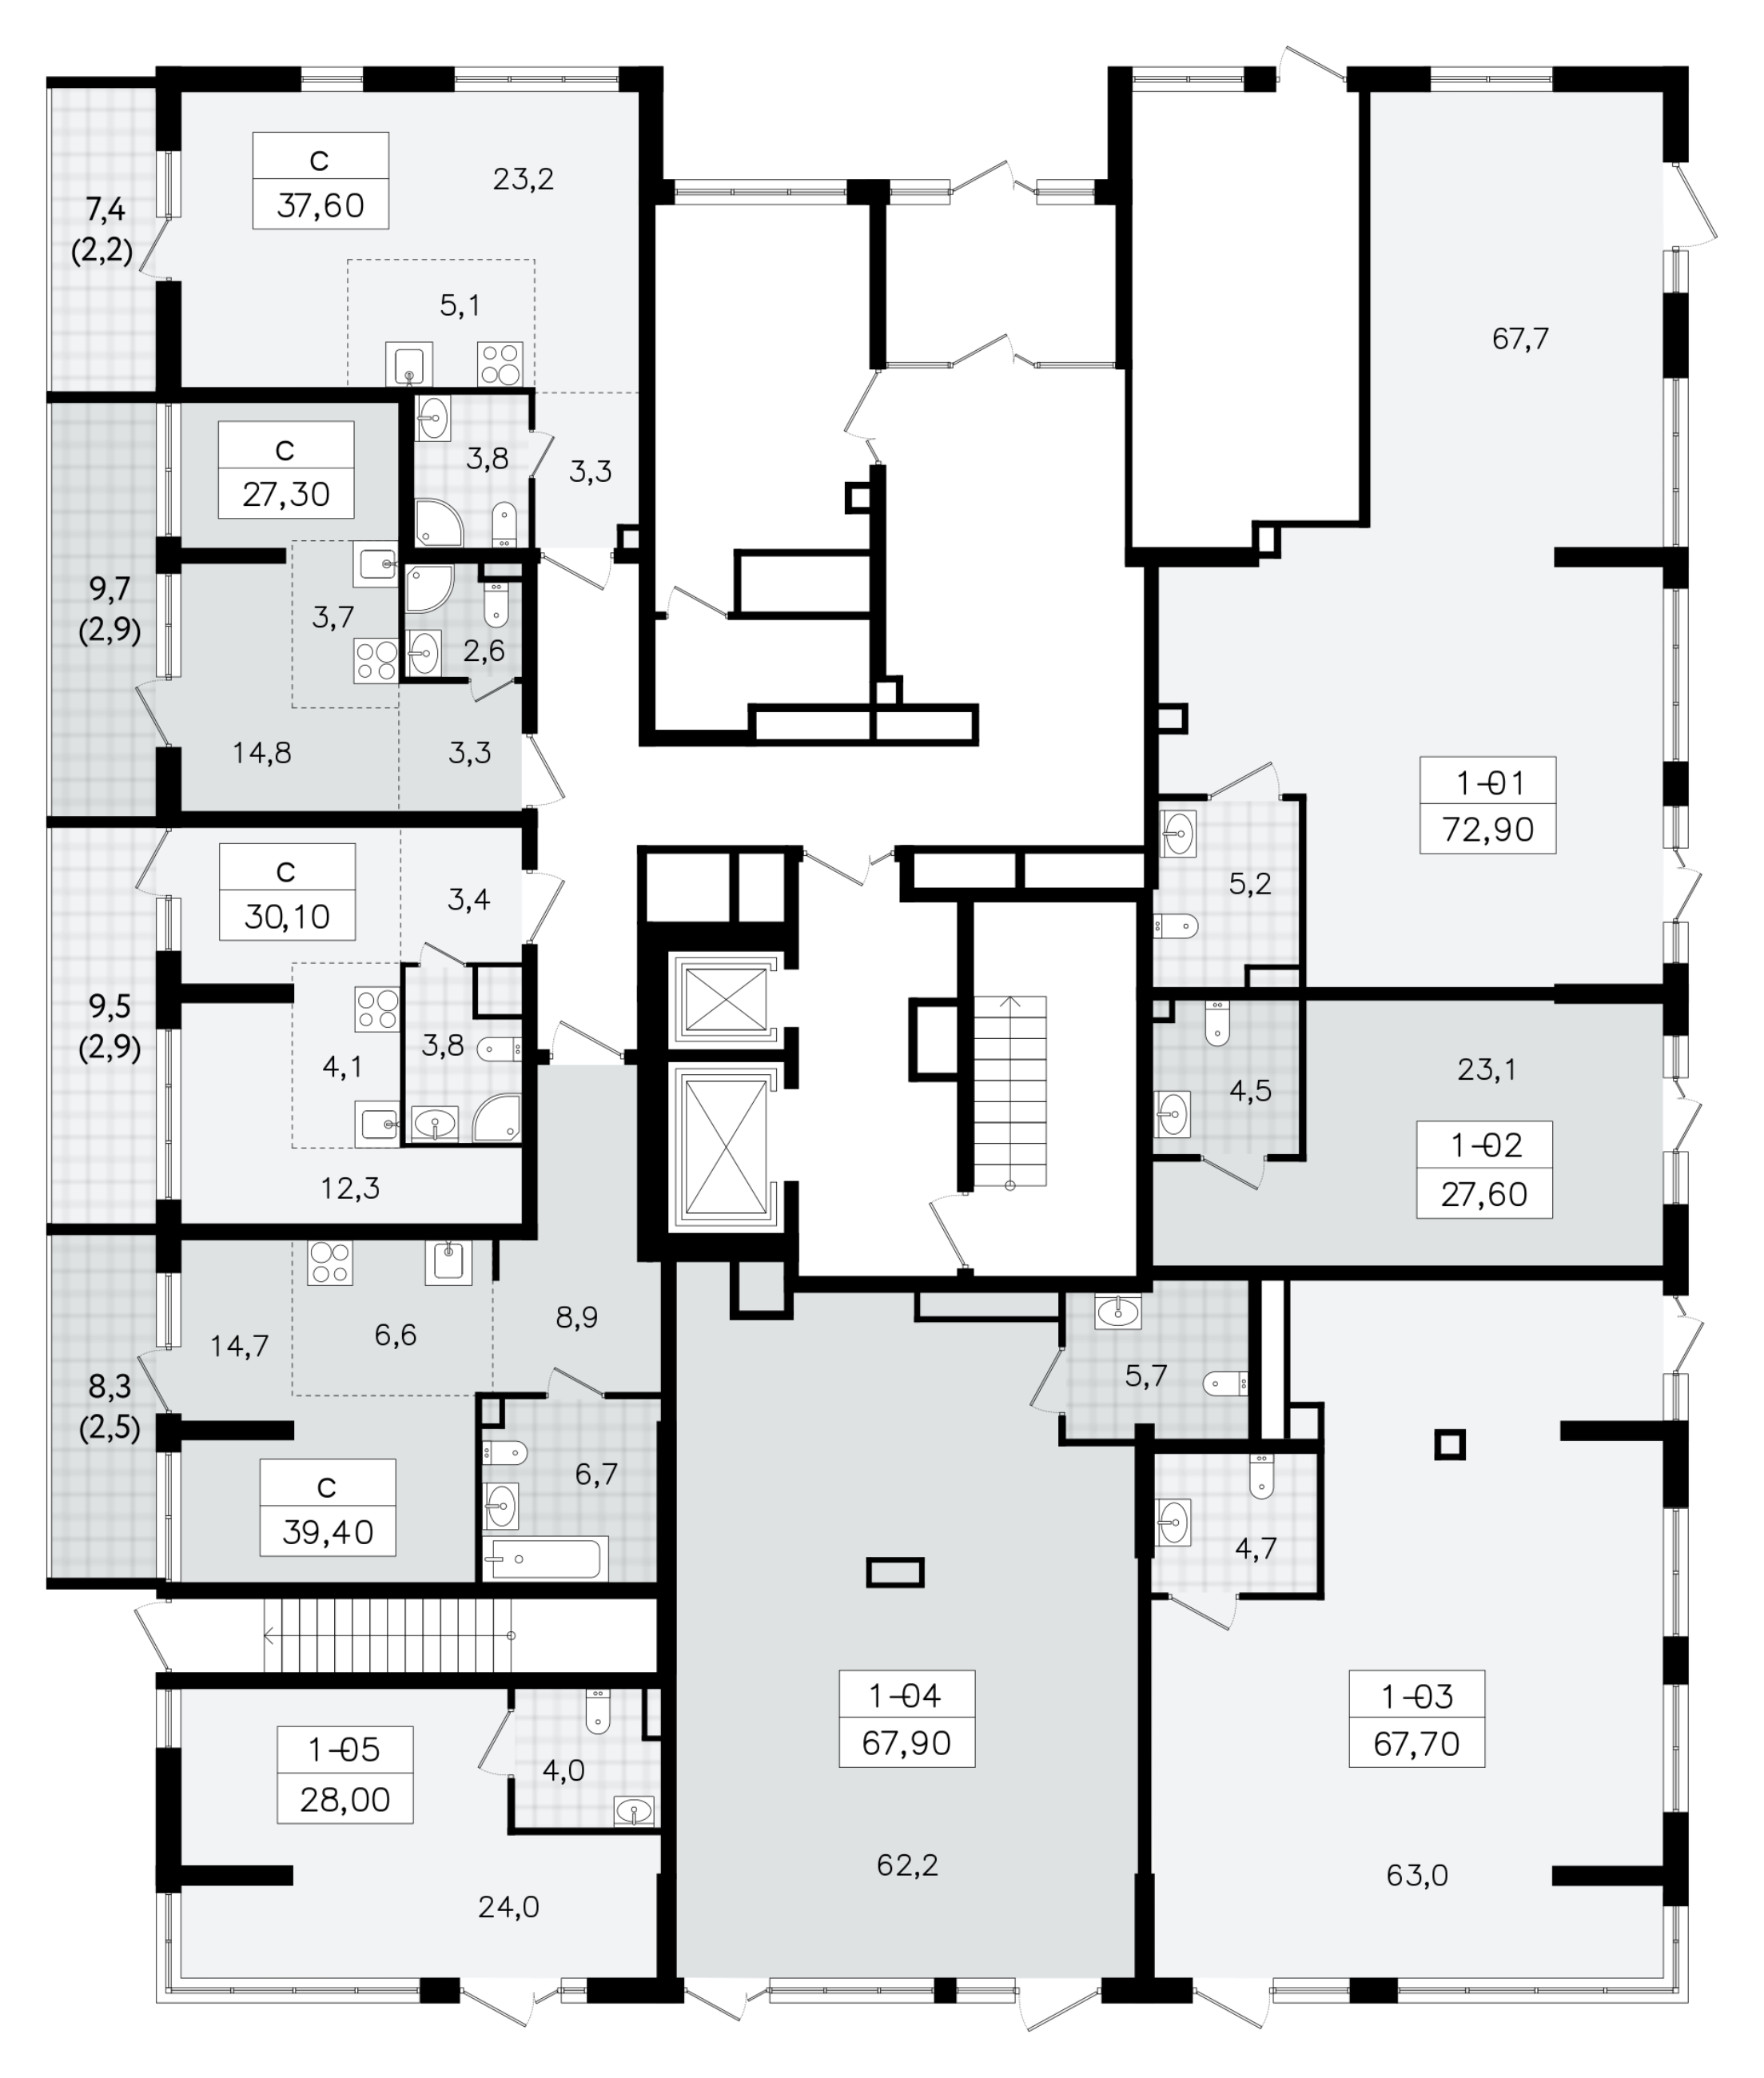 Помещение, 67.7 м² - планировка этажа